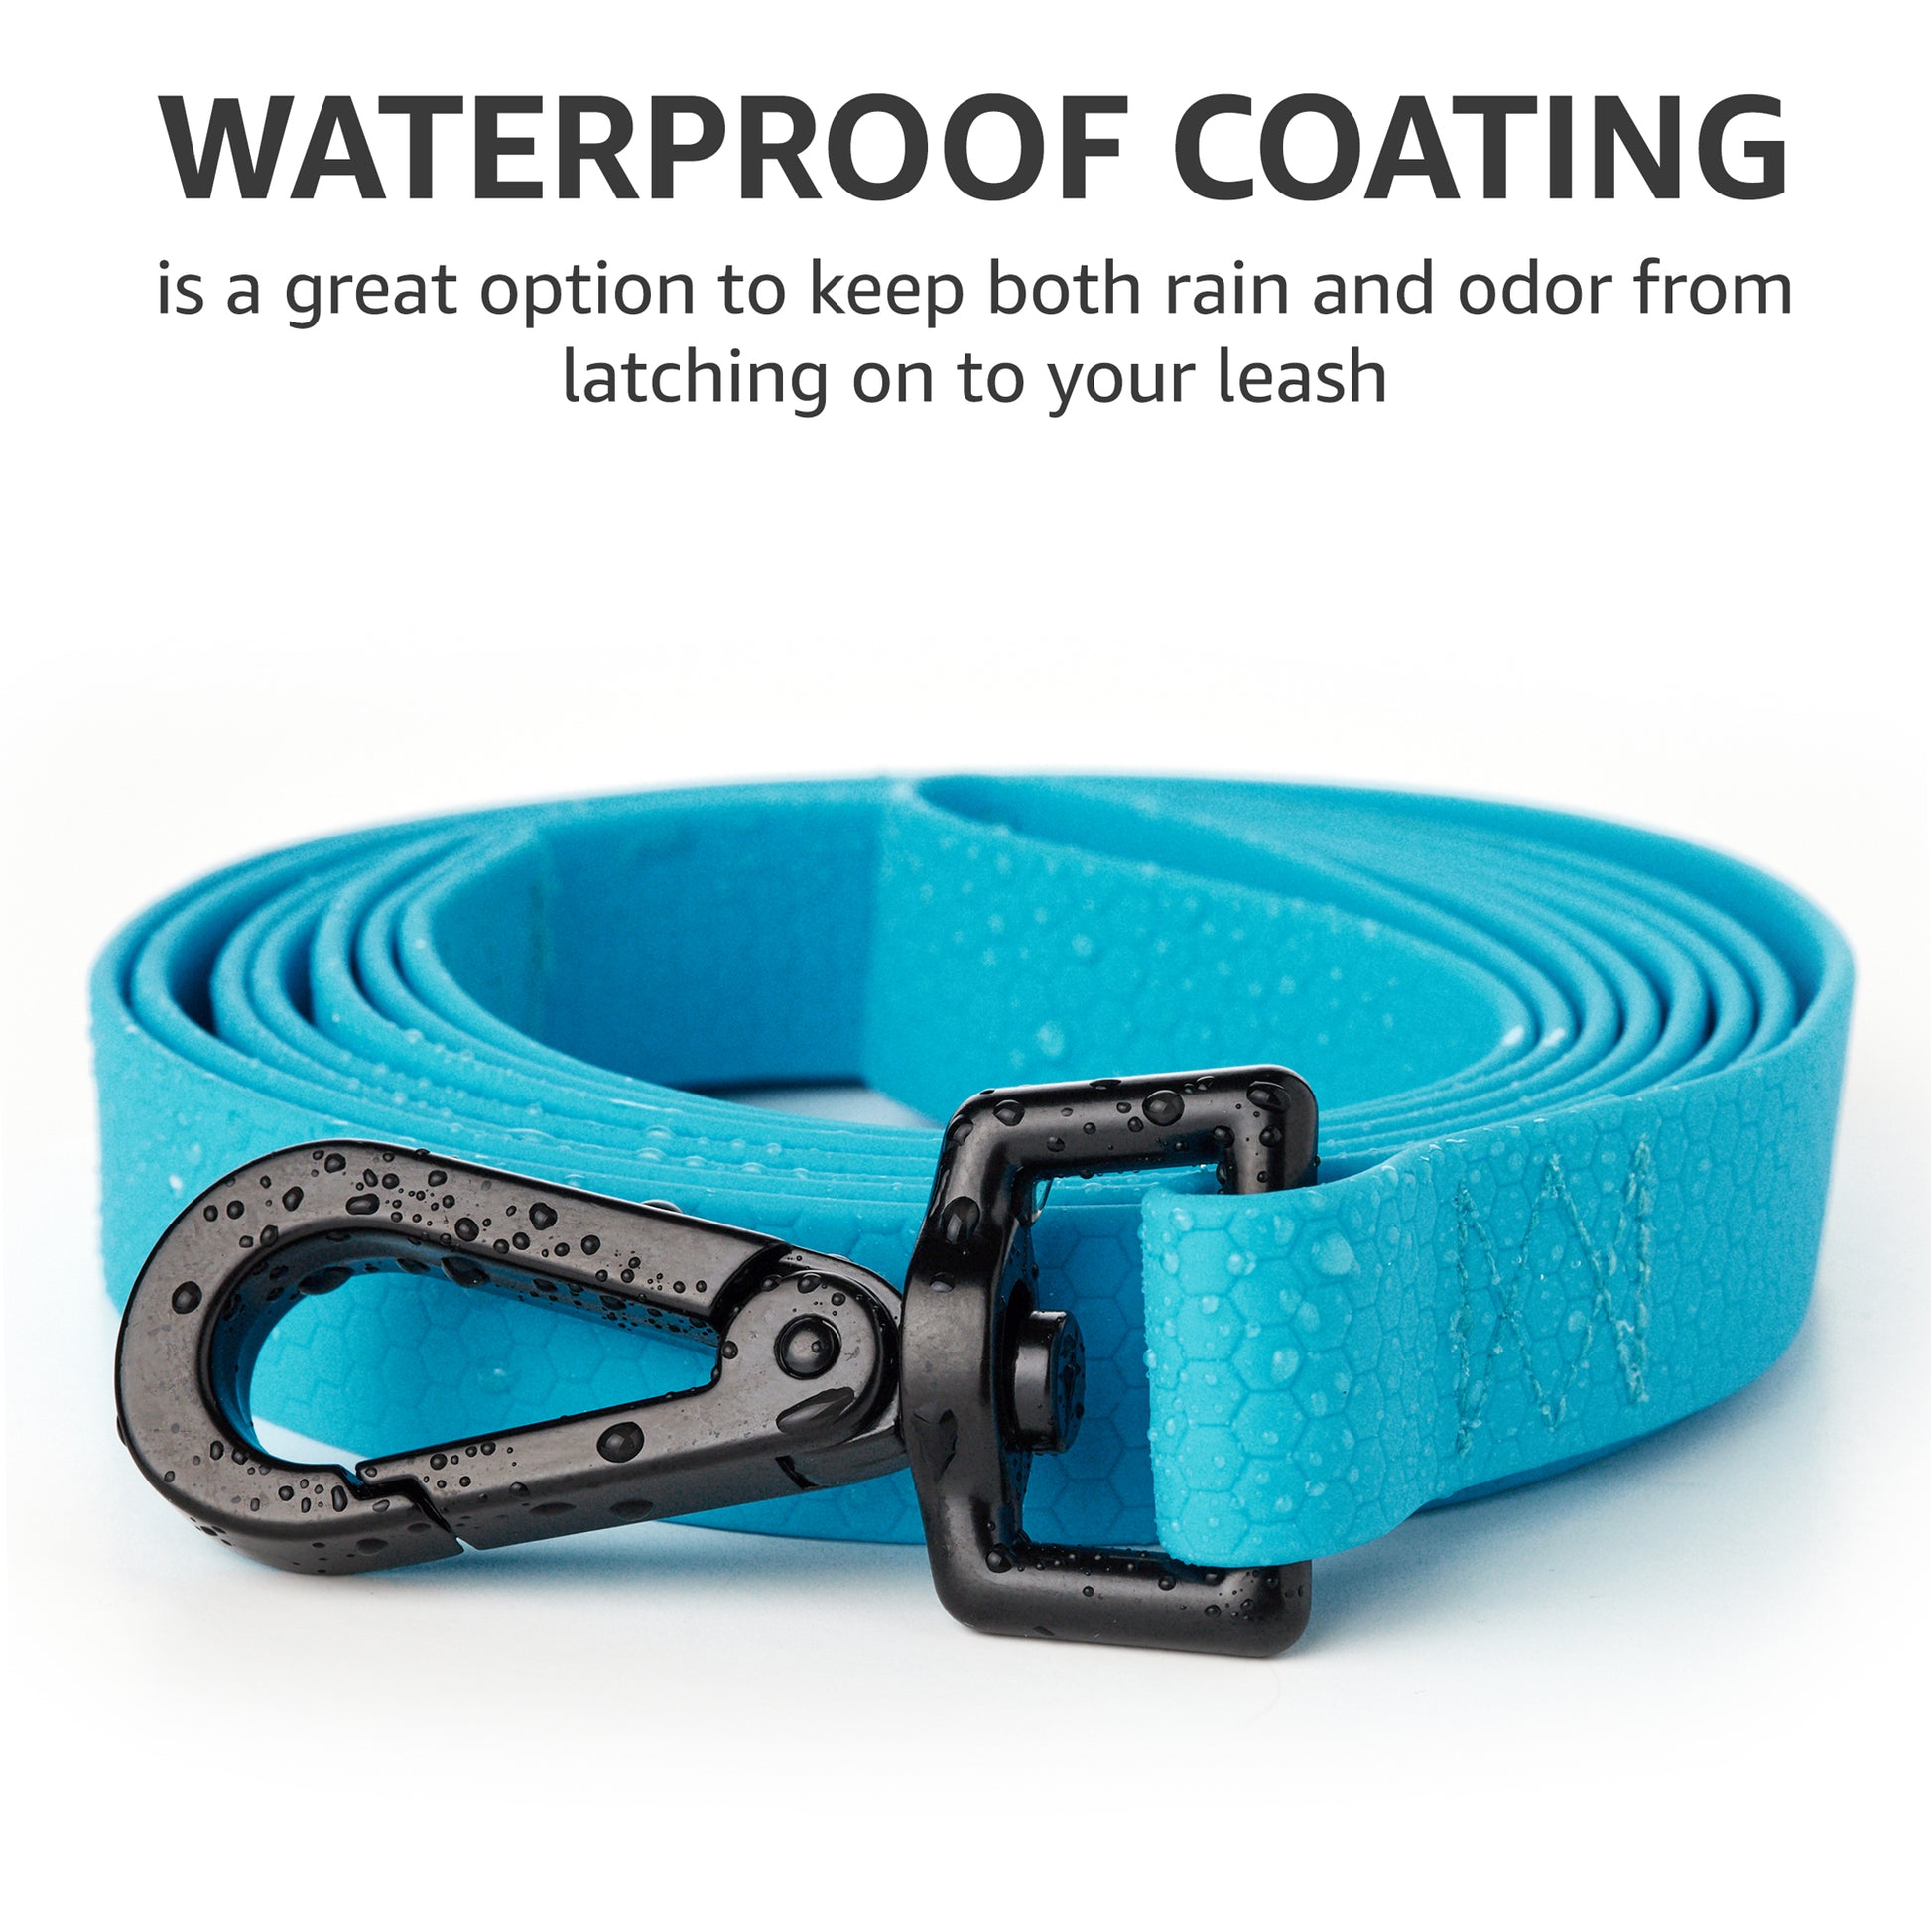 kevlar dog leash 6 ft_waterproof coating 